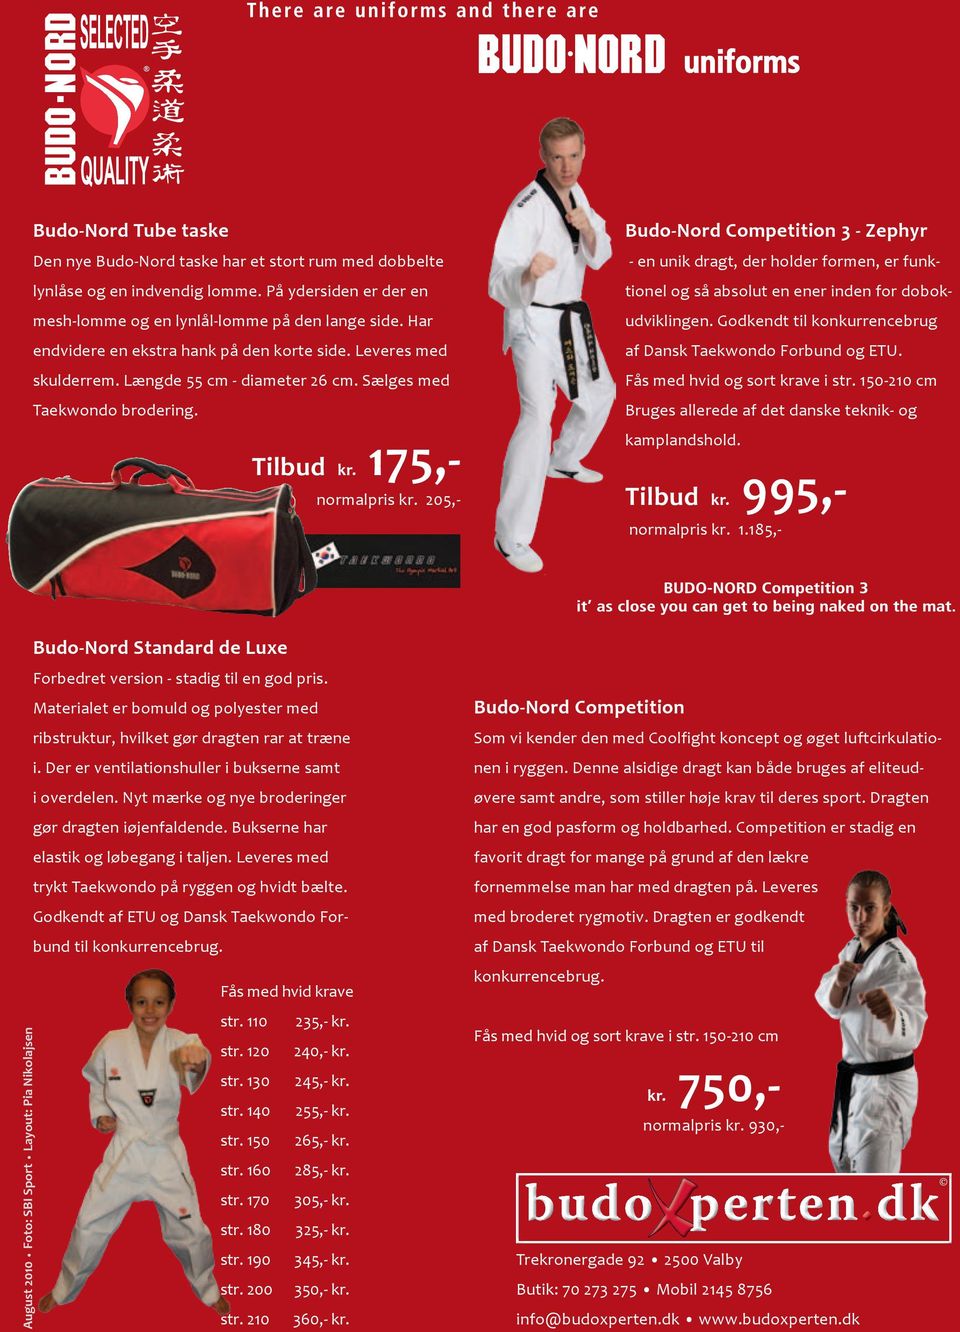 Sælges med Taekwondo brodering. Budo-Nord Standard de Luxe Forbedret version - stadig til en god pris. Materialet er bomuld og polyester med ribstruktur, hvilket gør dragten rar at træne i.